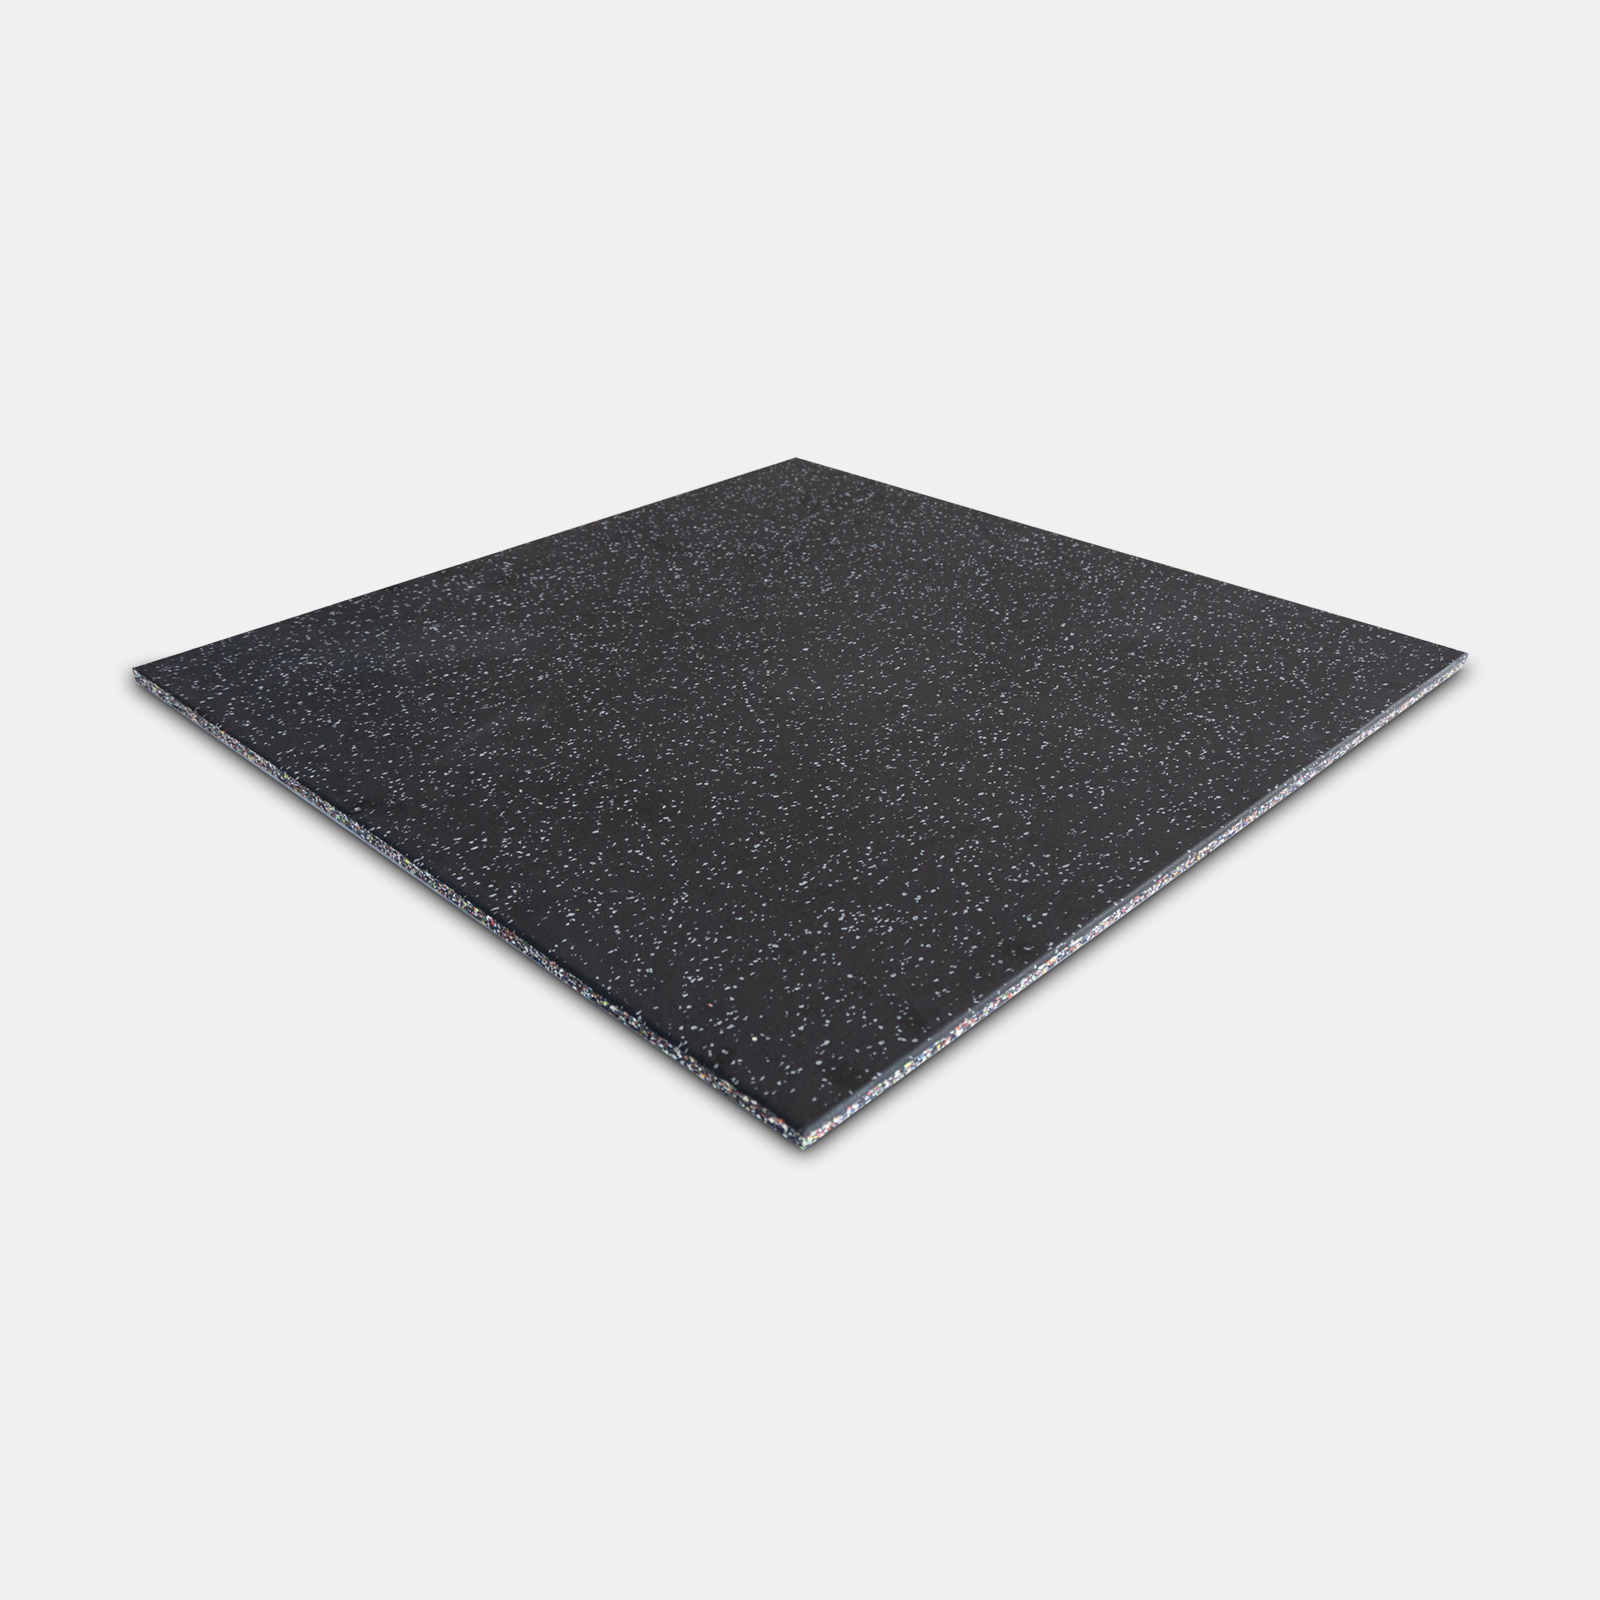 Ex-Comp Rubber Gym Tile 15mm - Black with Grey Fleck image